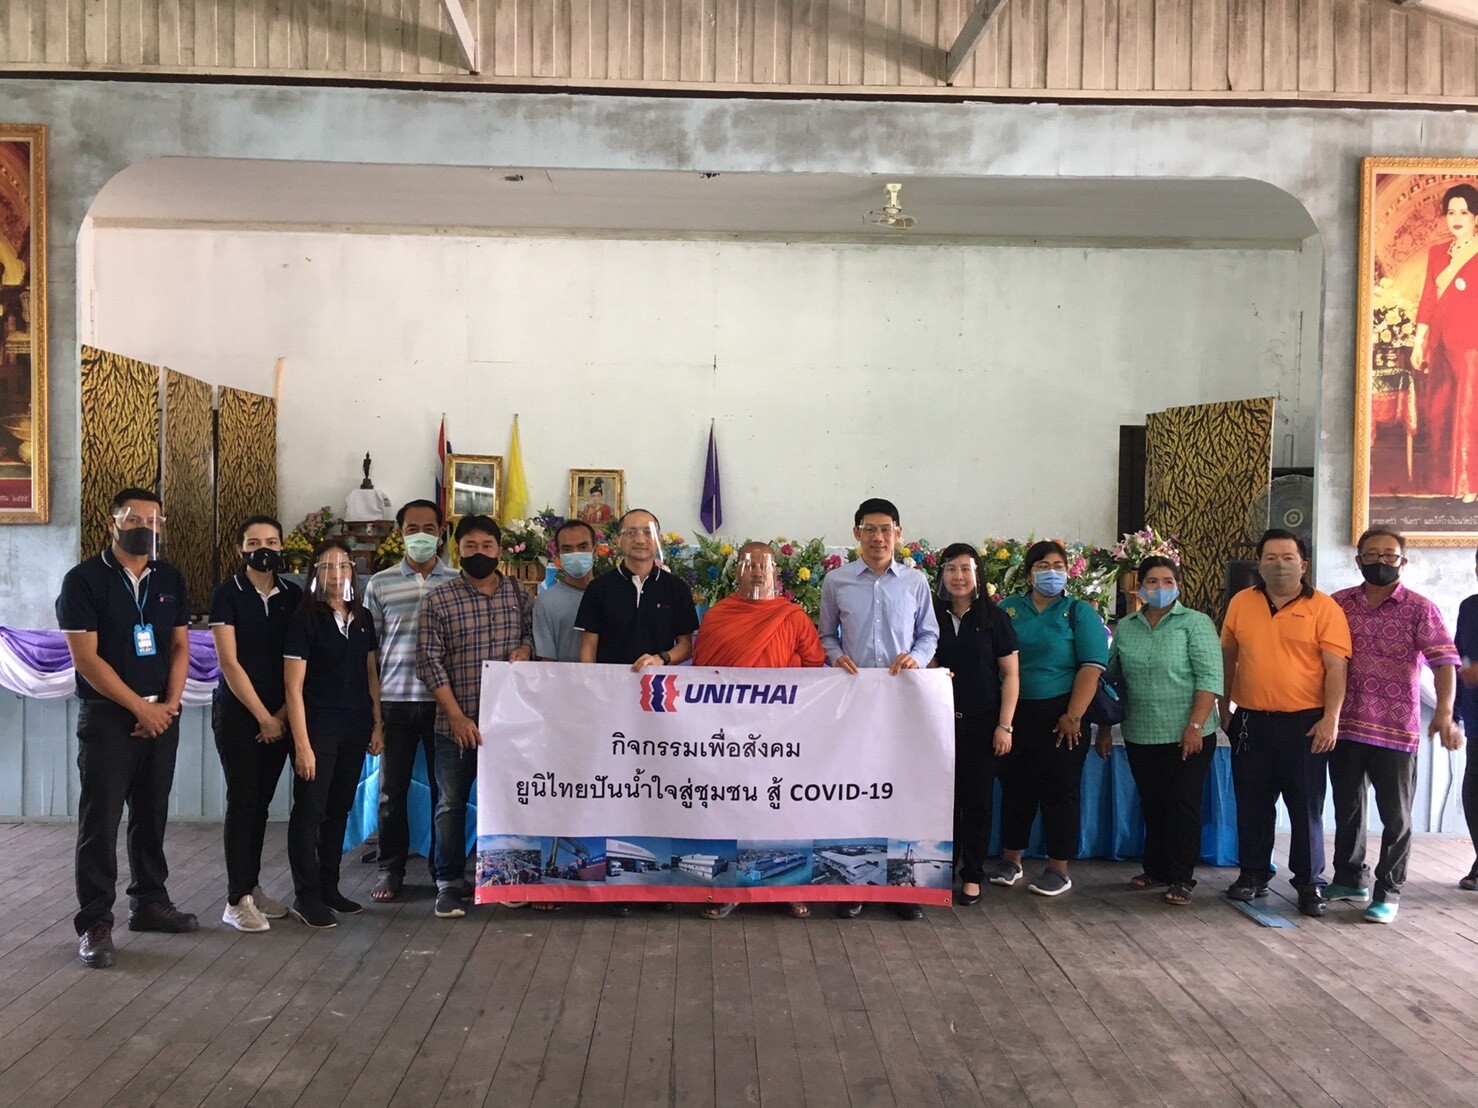 กลุ่มยูนิไทย จัดกิจกรรม“ยูนิไทย ปันน้ำใจสู่ชุมชน สู้ภัยโควิด-19” มอบถุงยังชีพ ให้กับผู้ที่ได้รับผลกระทบจาก COVID-19 ในชุมชนบางเสาธง จ.สมุทรปราการ